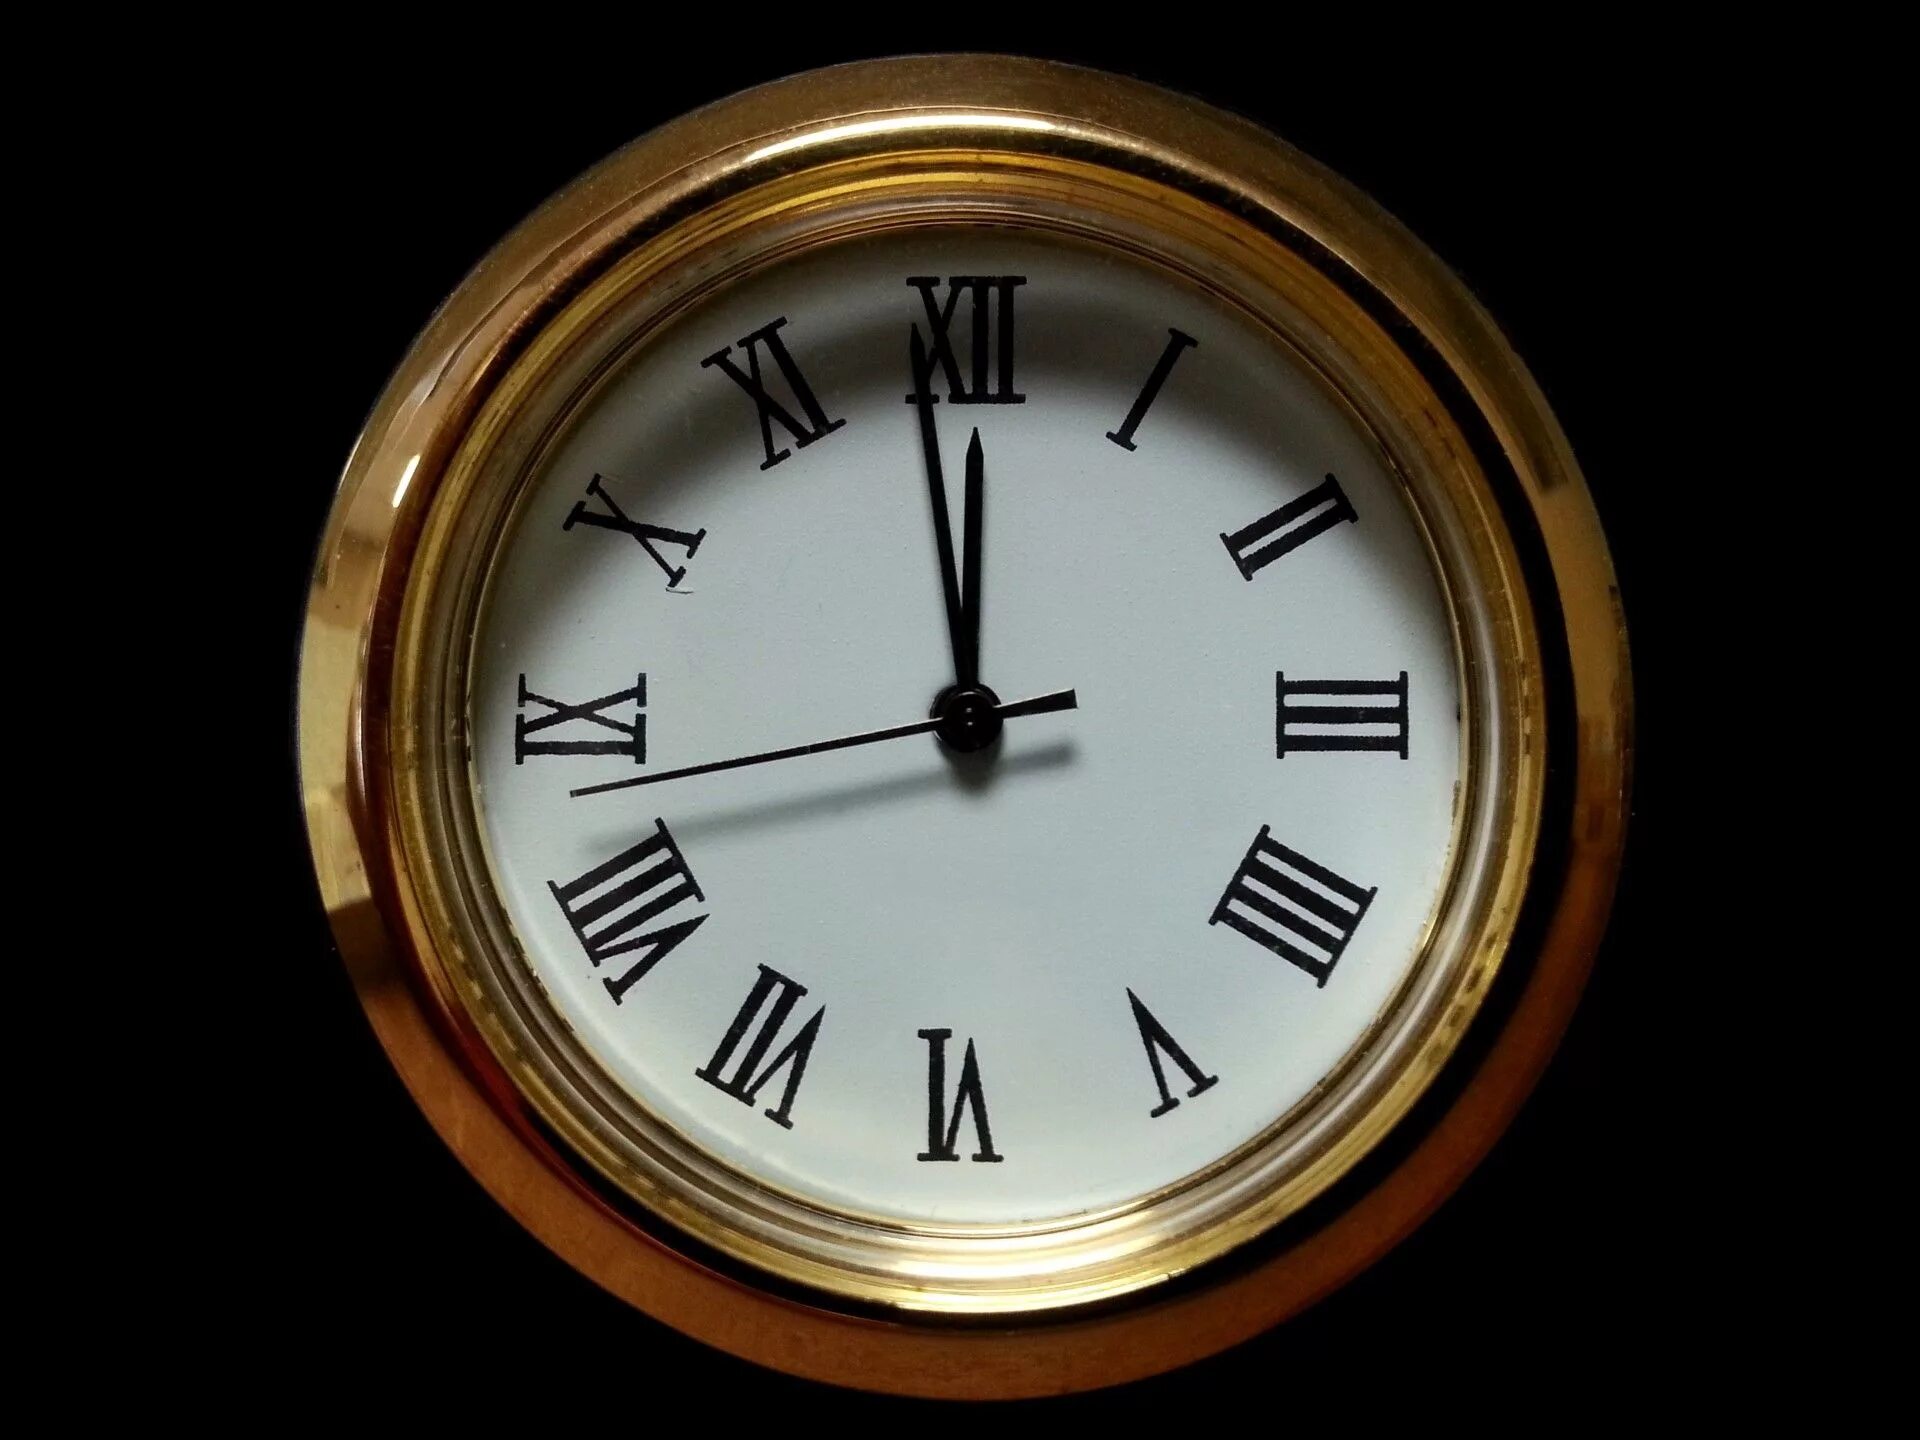 Старинные часы. Часы полночь. Часы показывают полночь. Изображение часов.